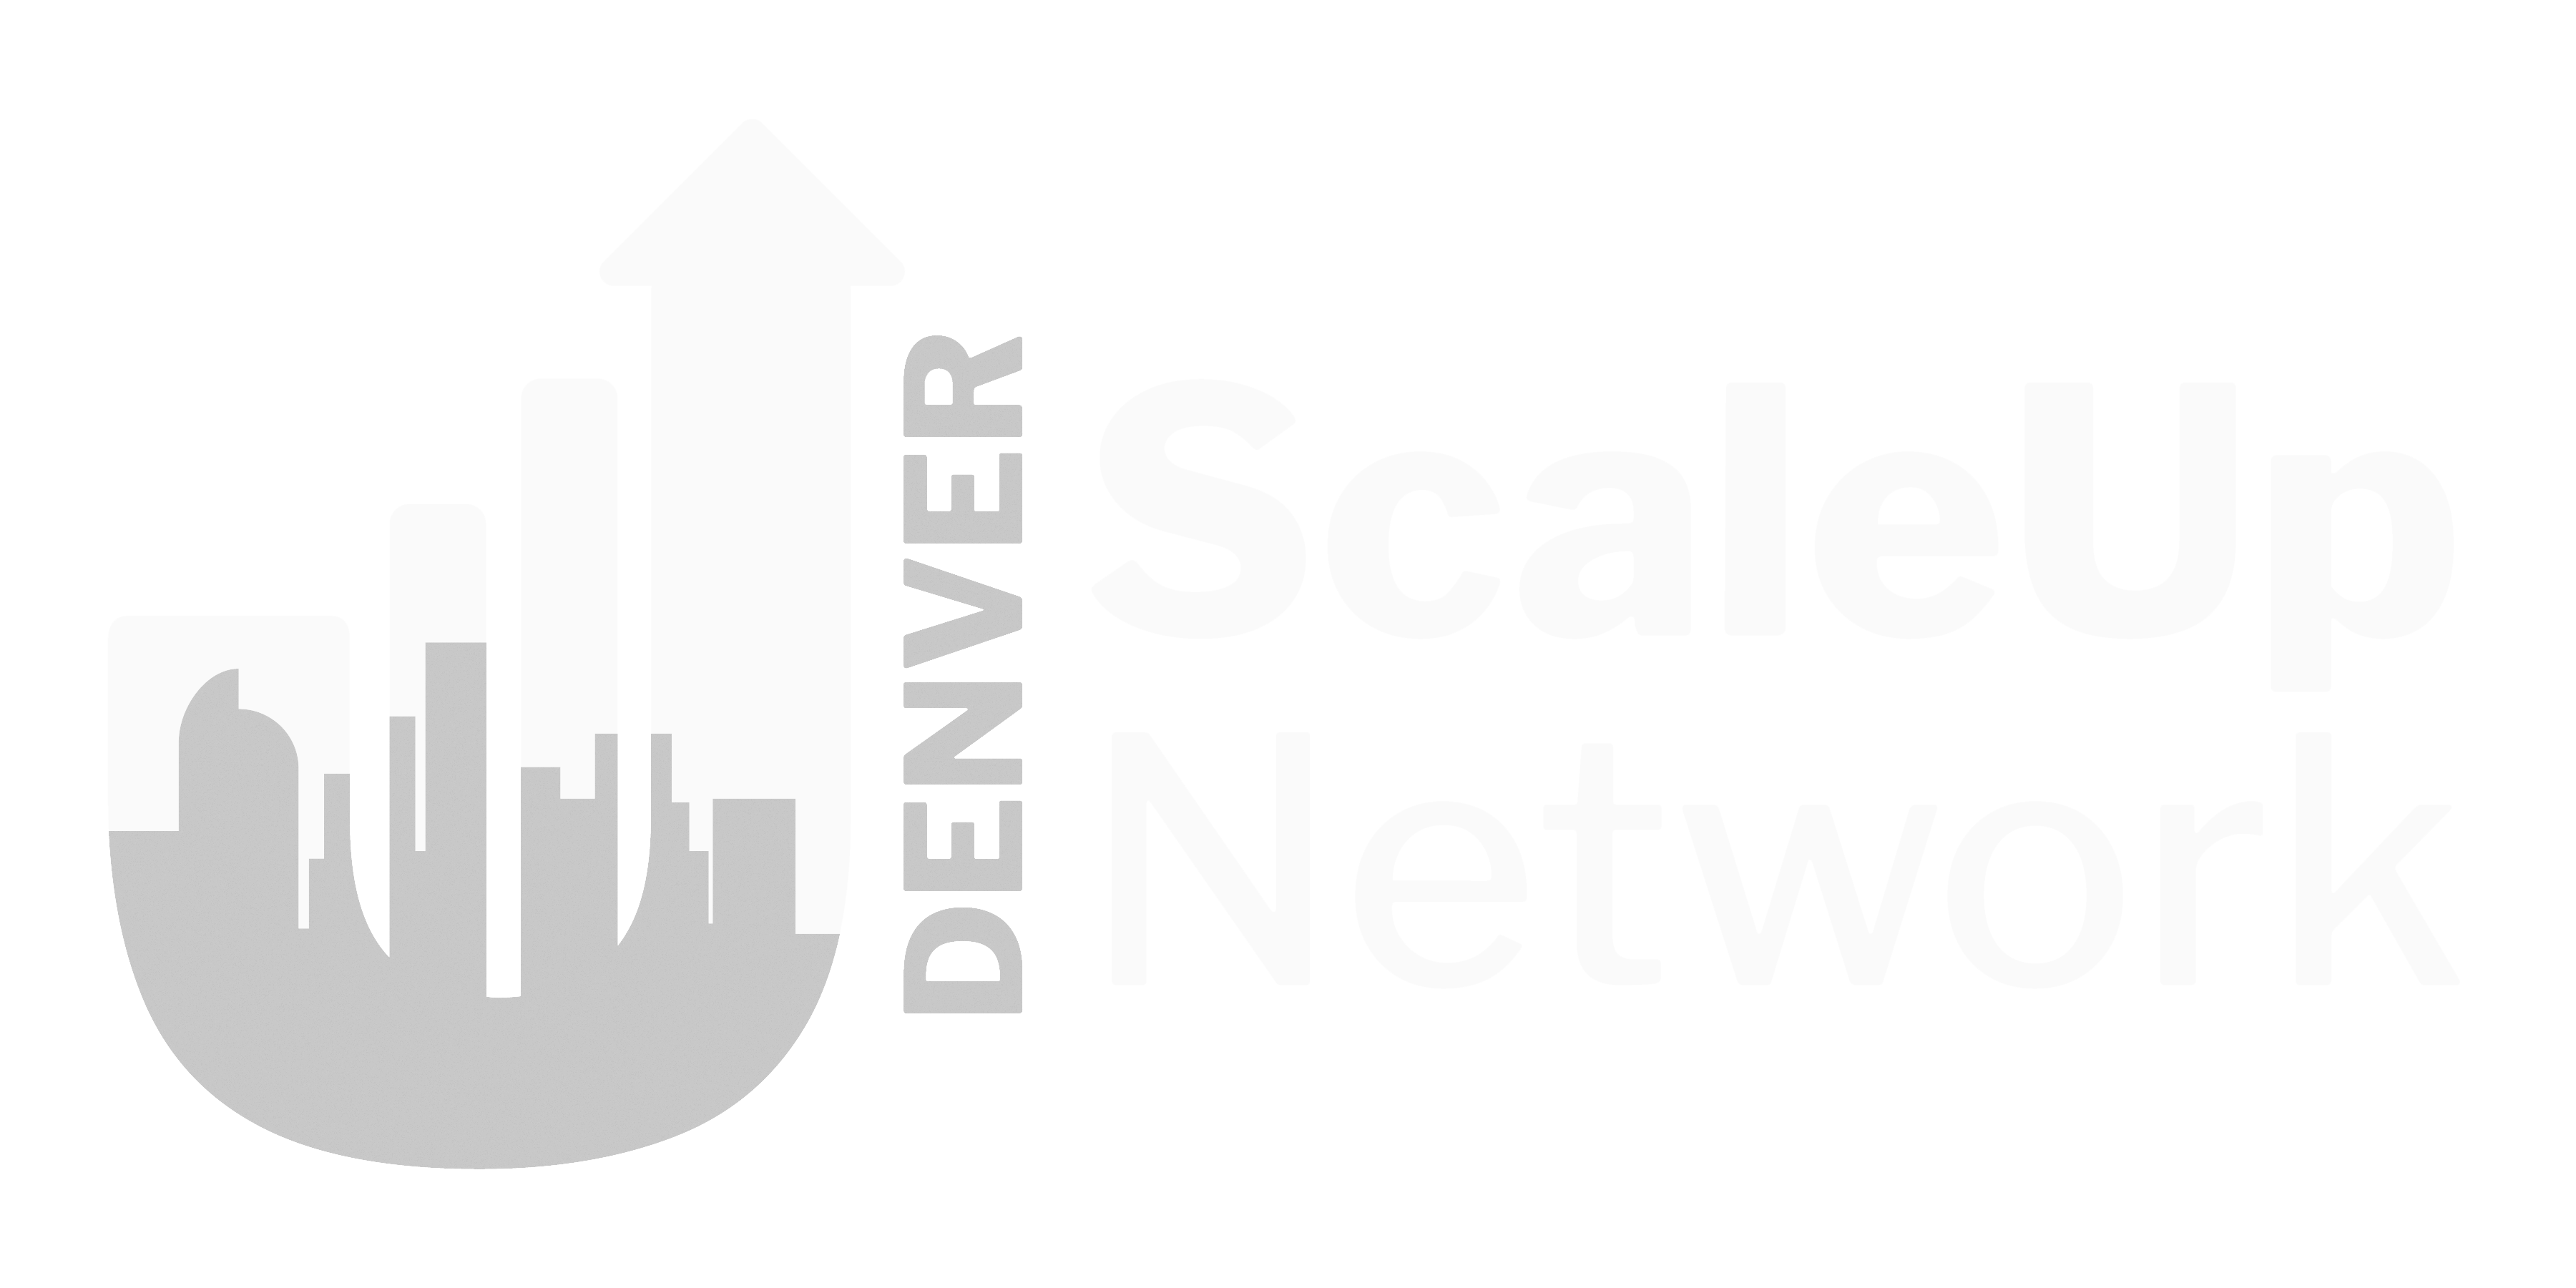 Denver Scale Up Network Logo